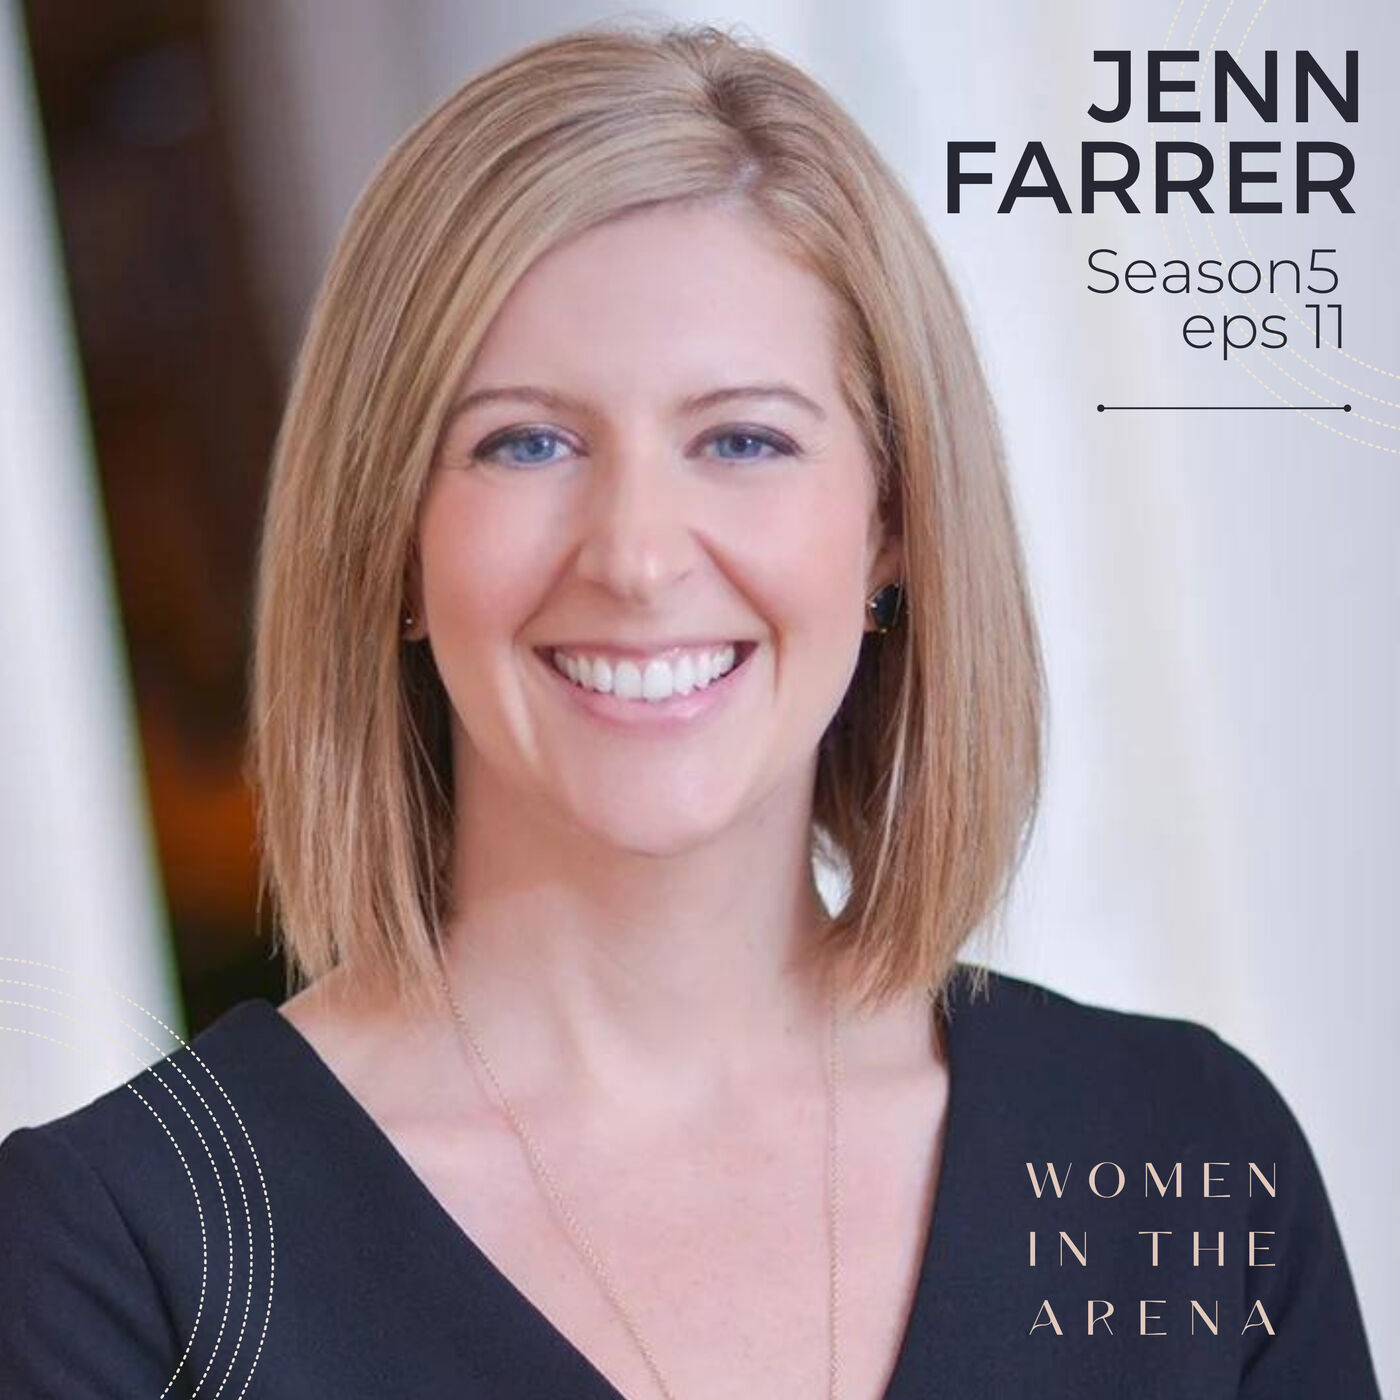 Societies’ scorecard for women is untenable with Jenn Farrer